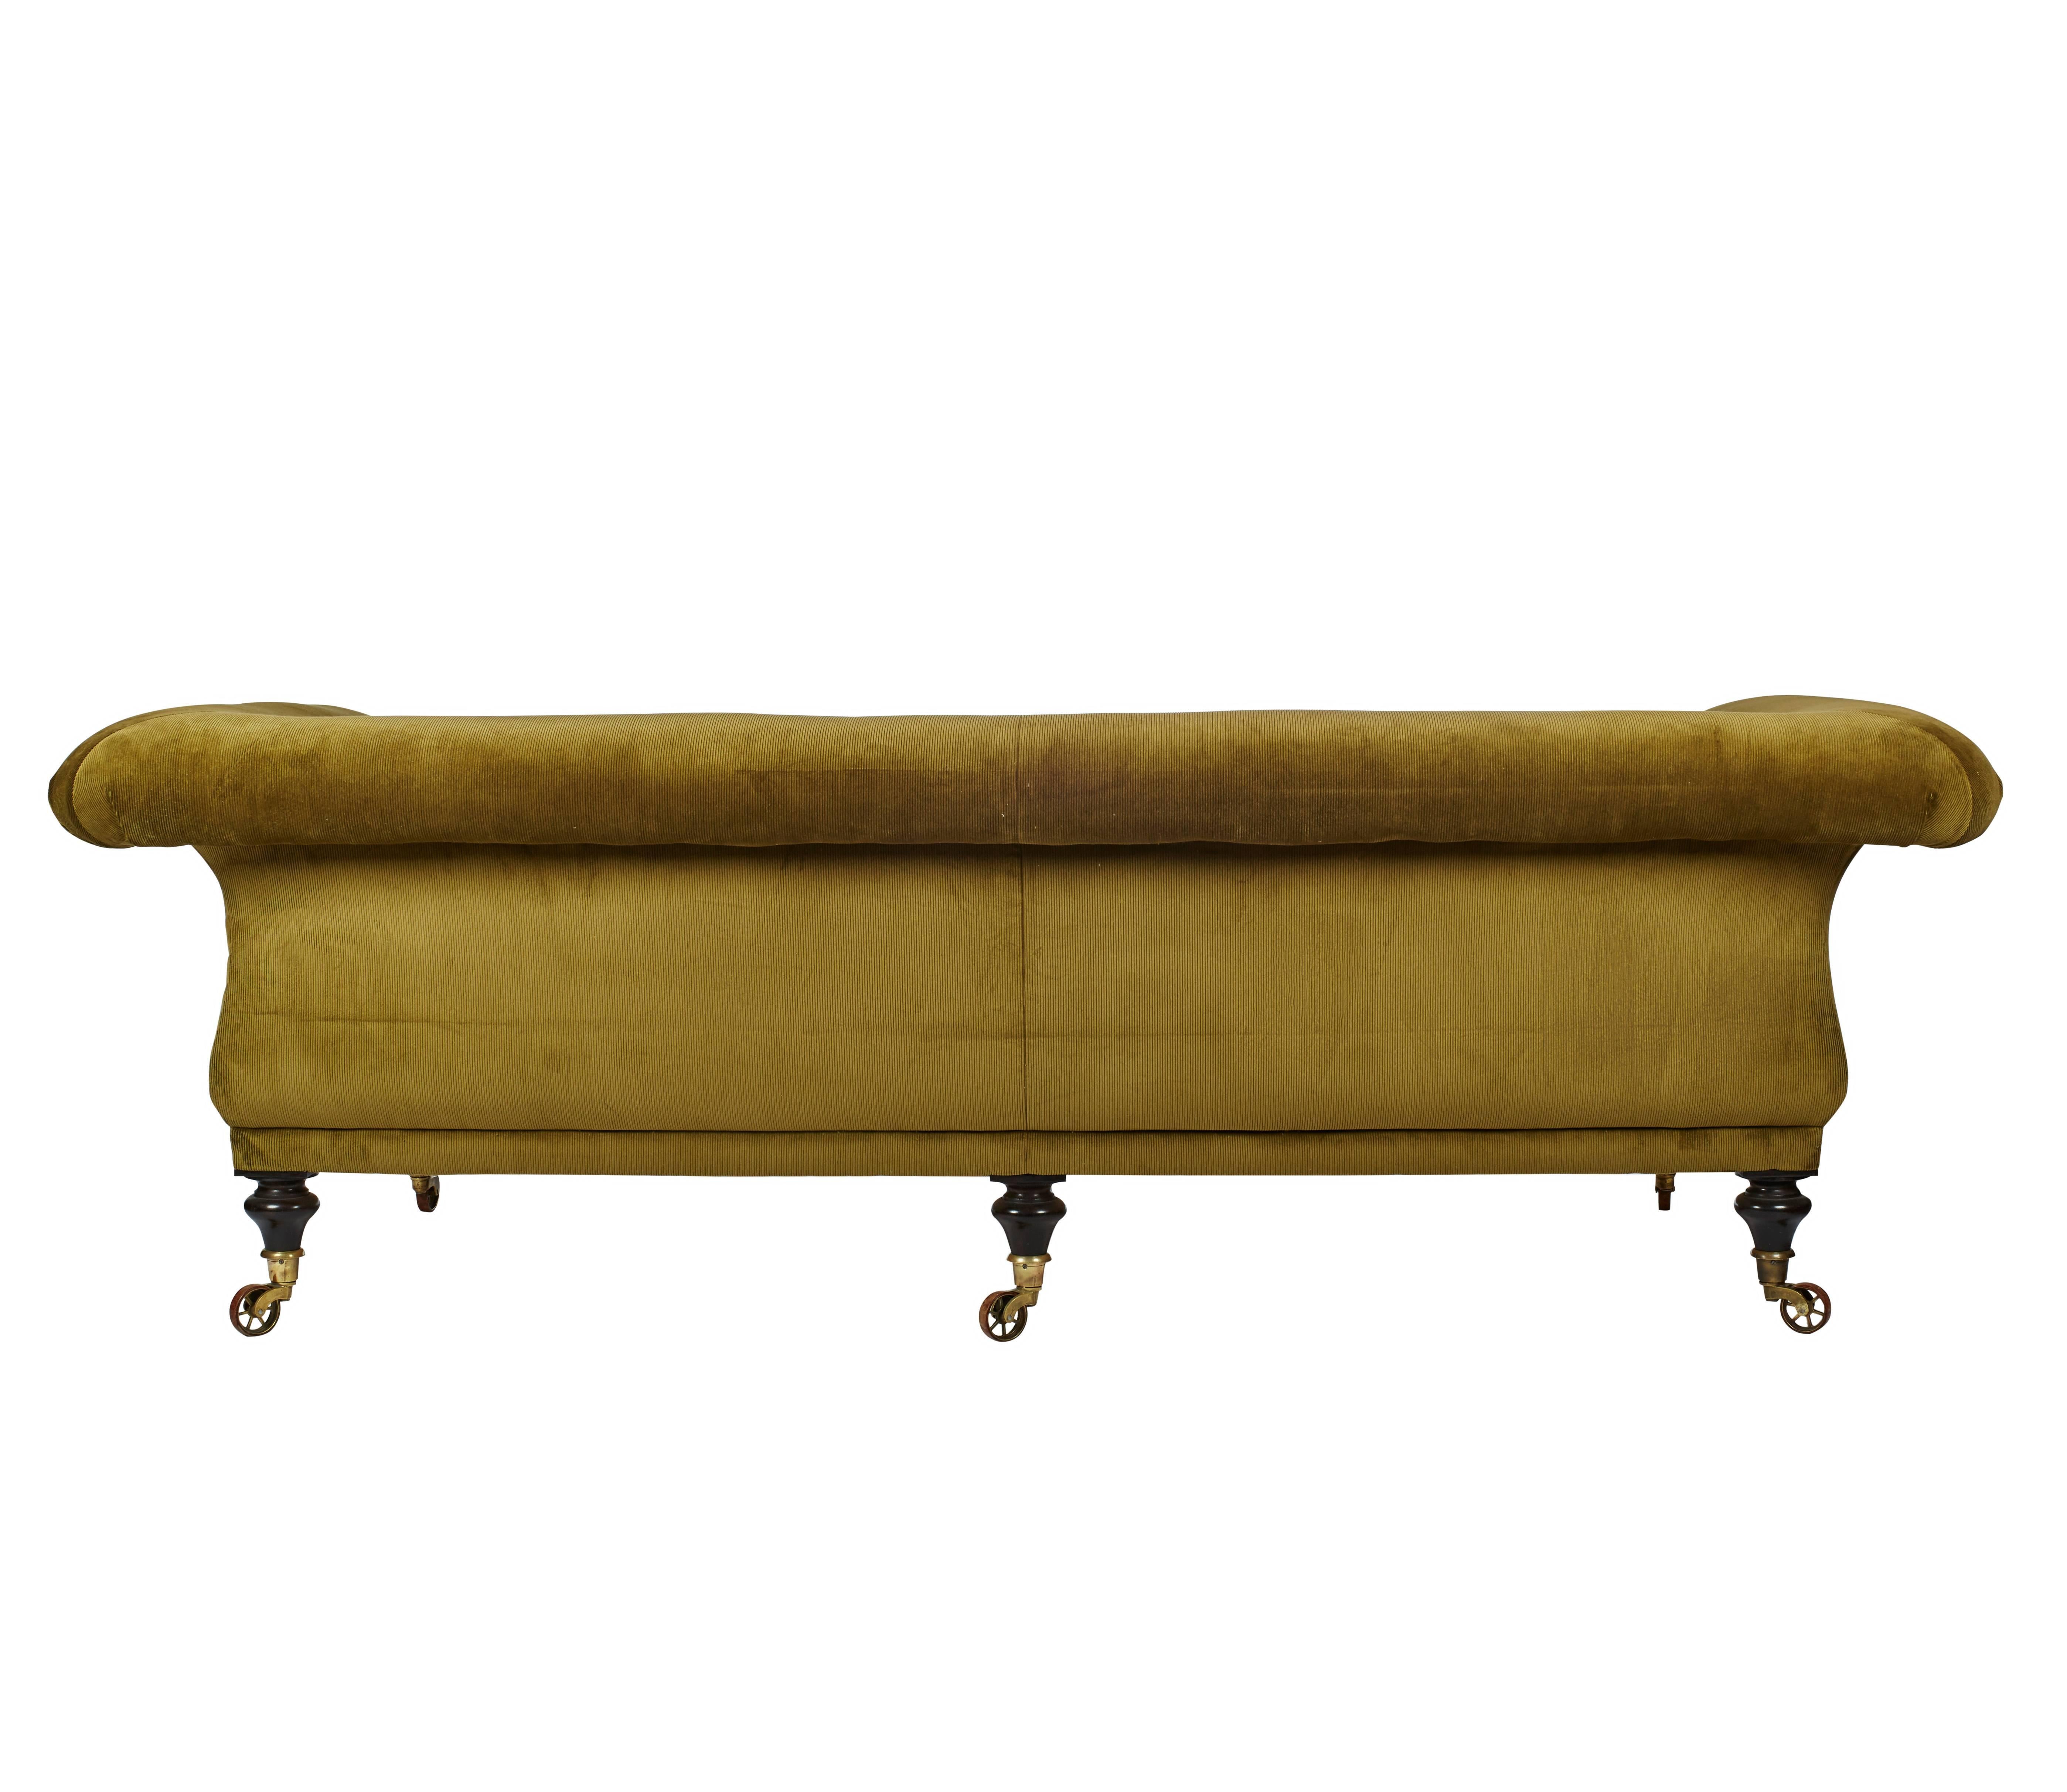 Great Britain (UK) Upholstered 'Kinross' Regency-Inspired Sofa by Ensemblier, Bespoke For Sale